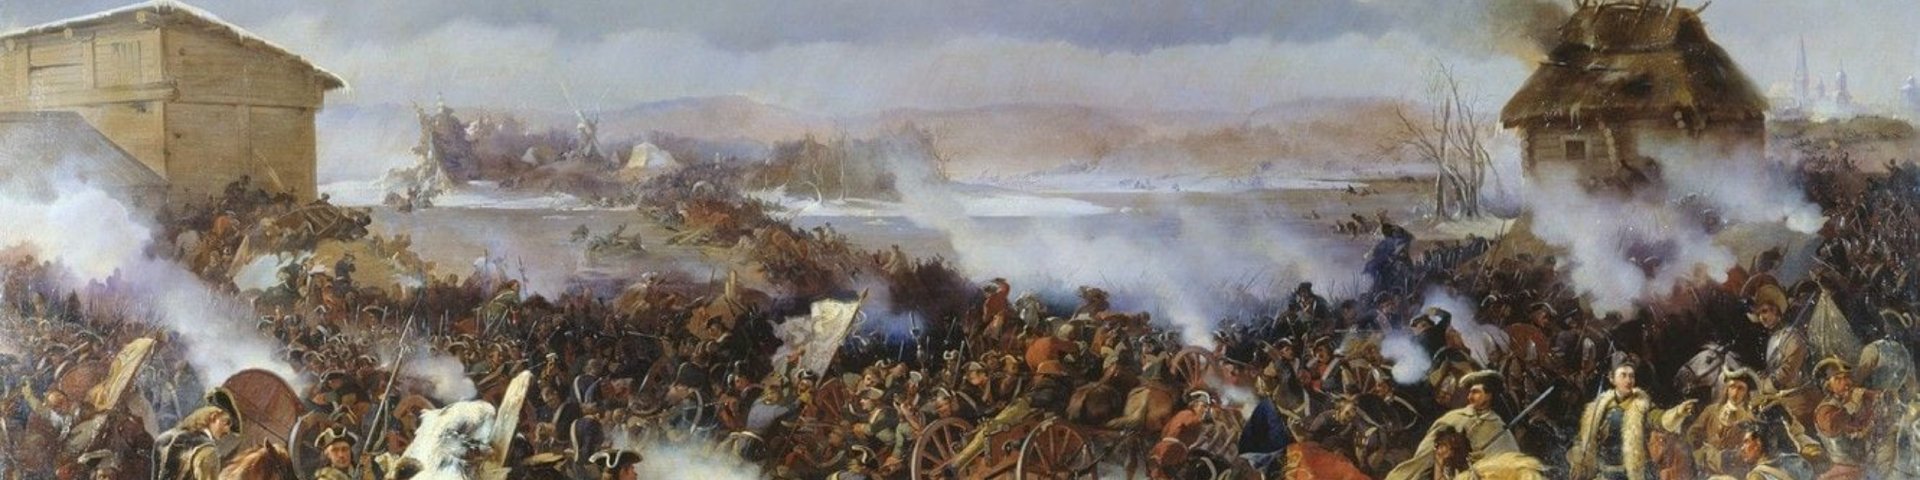 Põhjasõda, Narva lahing